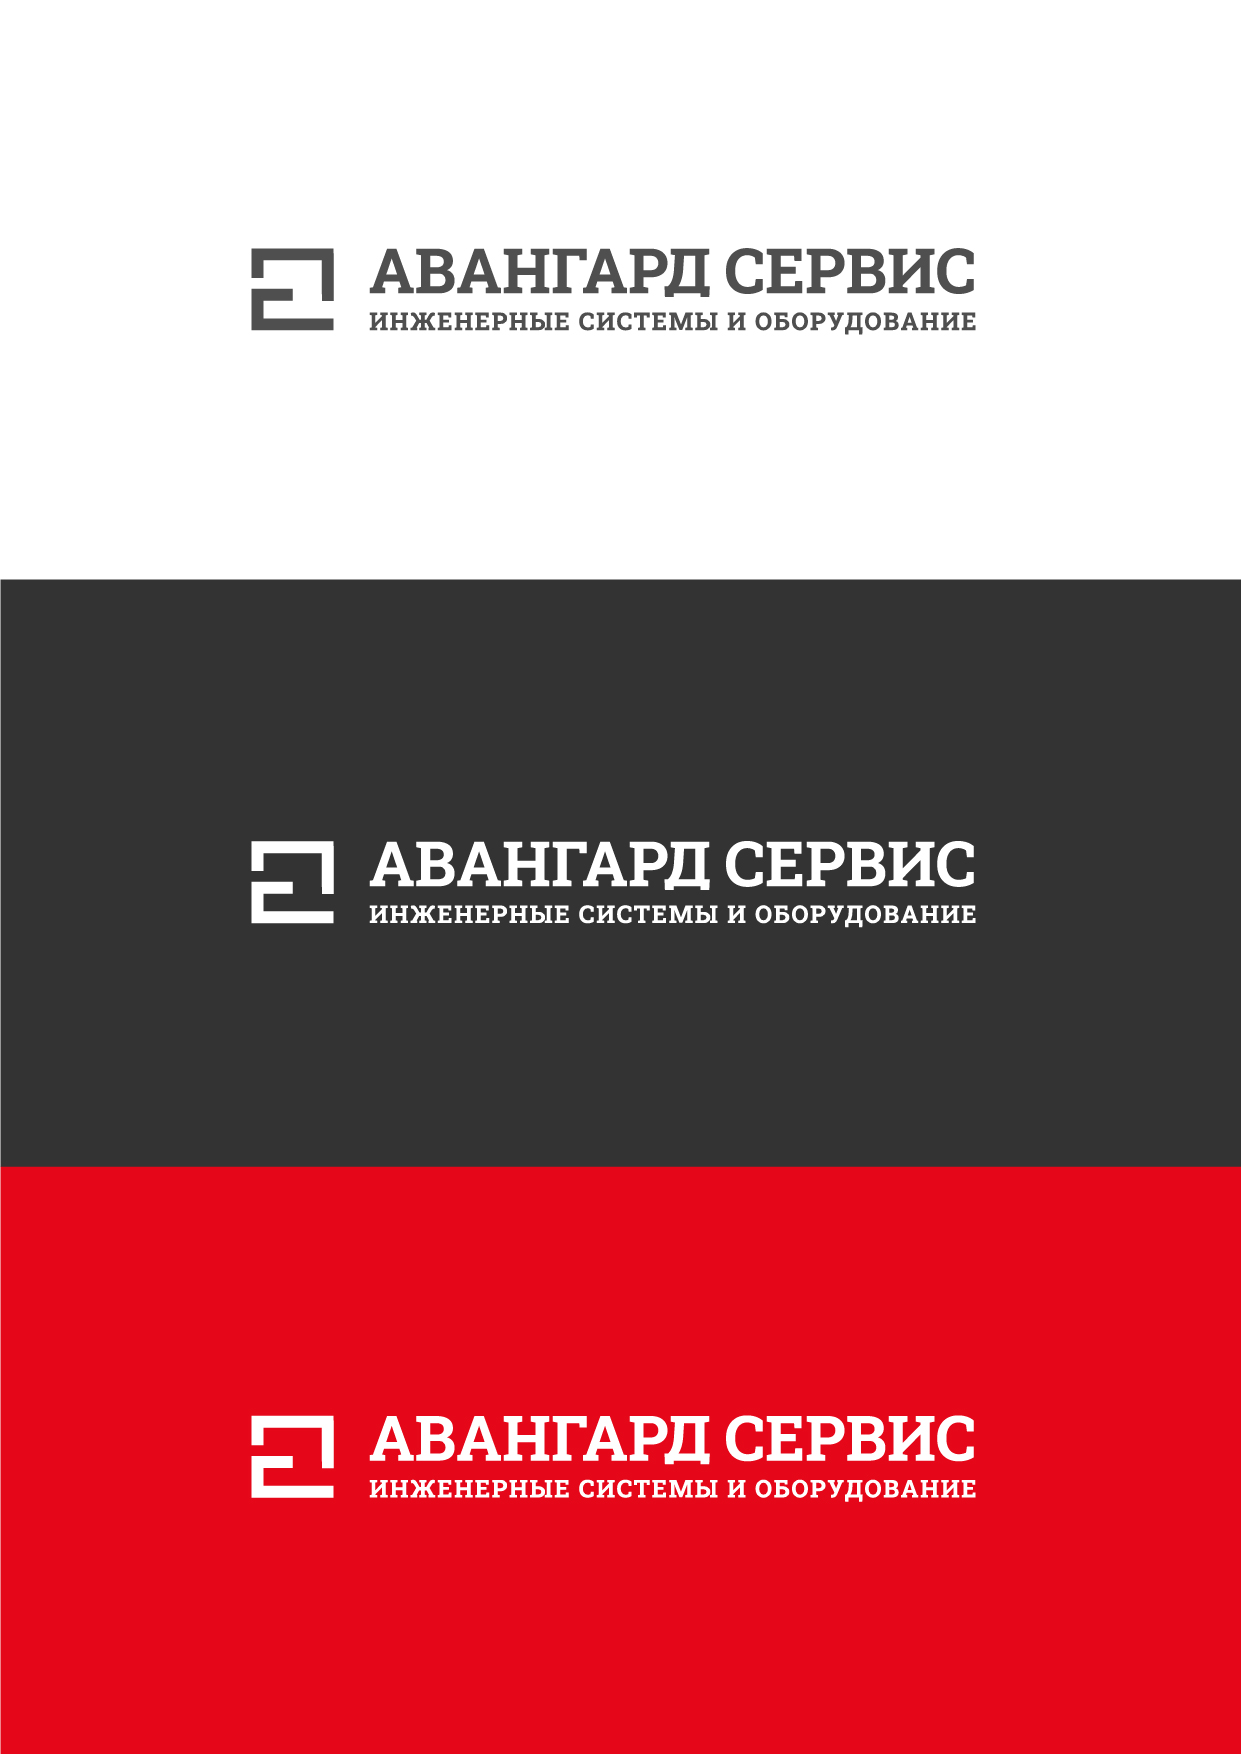 Logo2 Монтажная Область 1 Копия 4